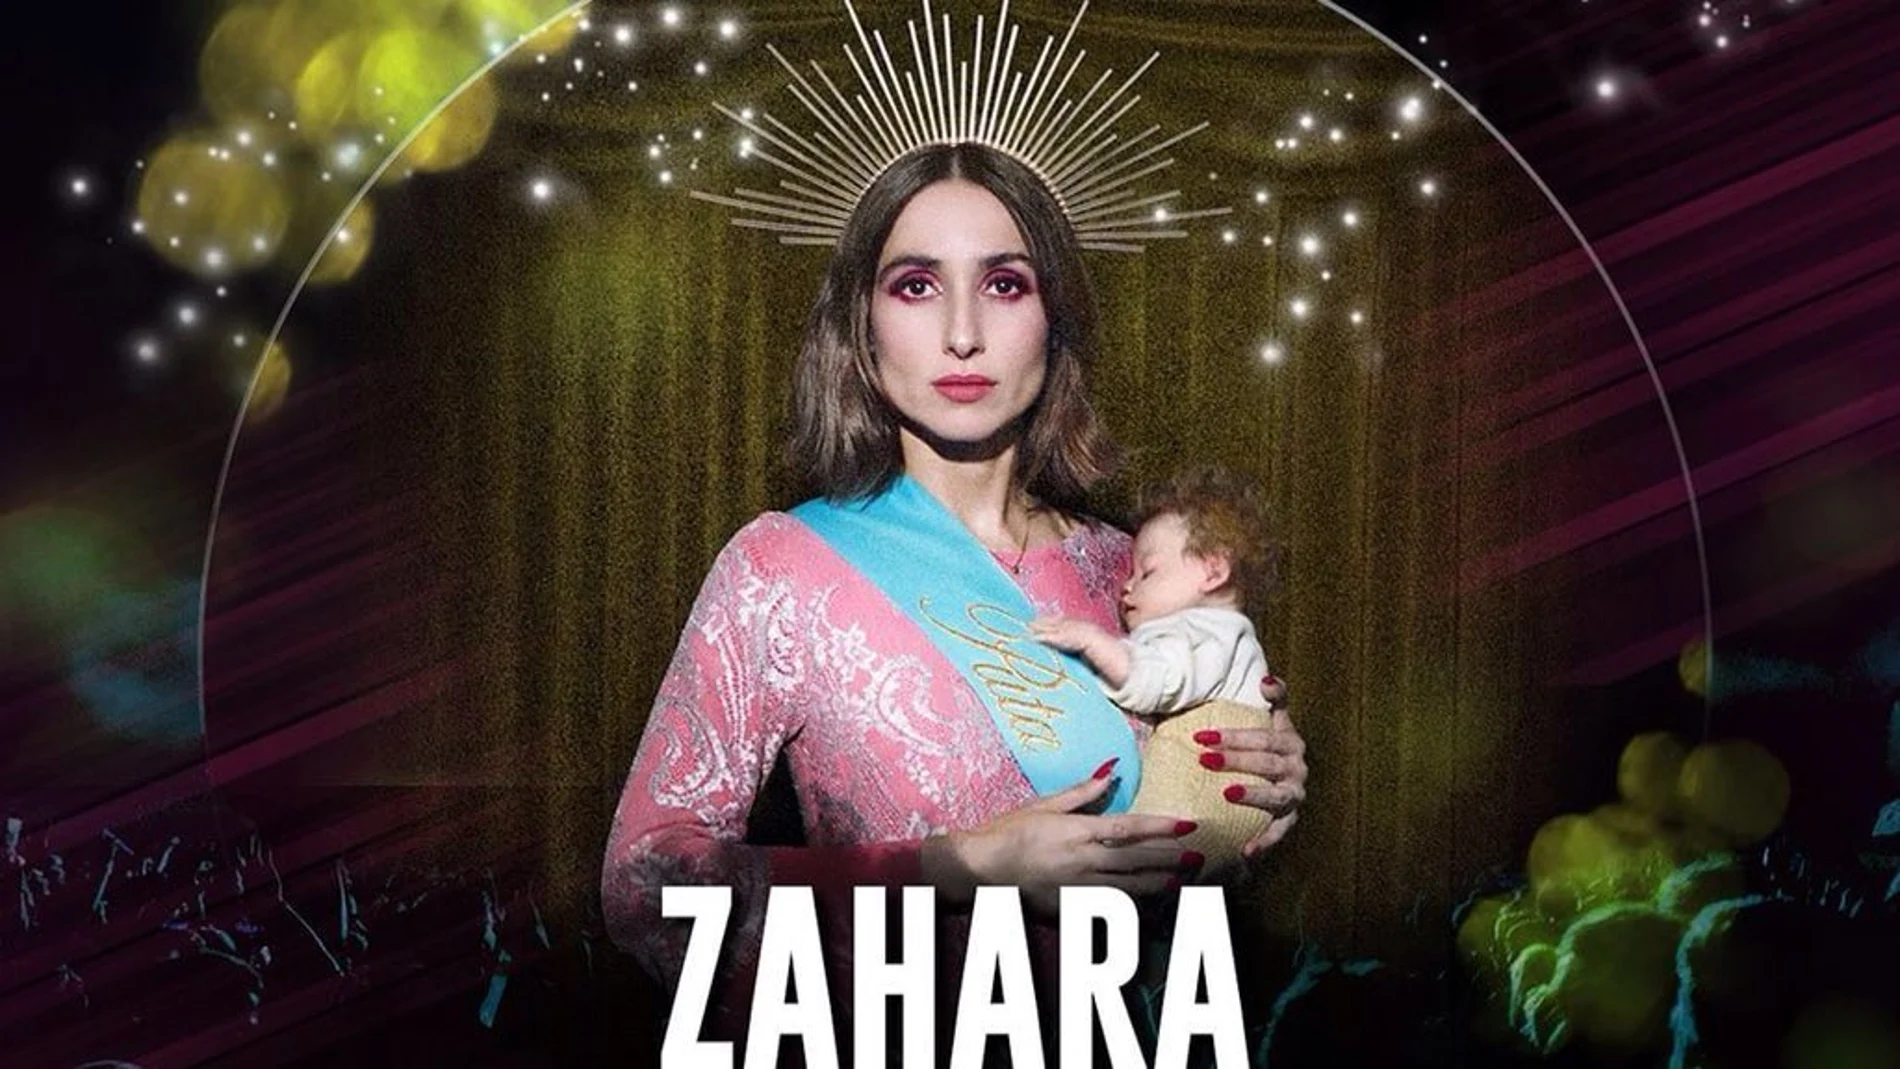 El polémico cartel de Zahara para su concierto de Toledo